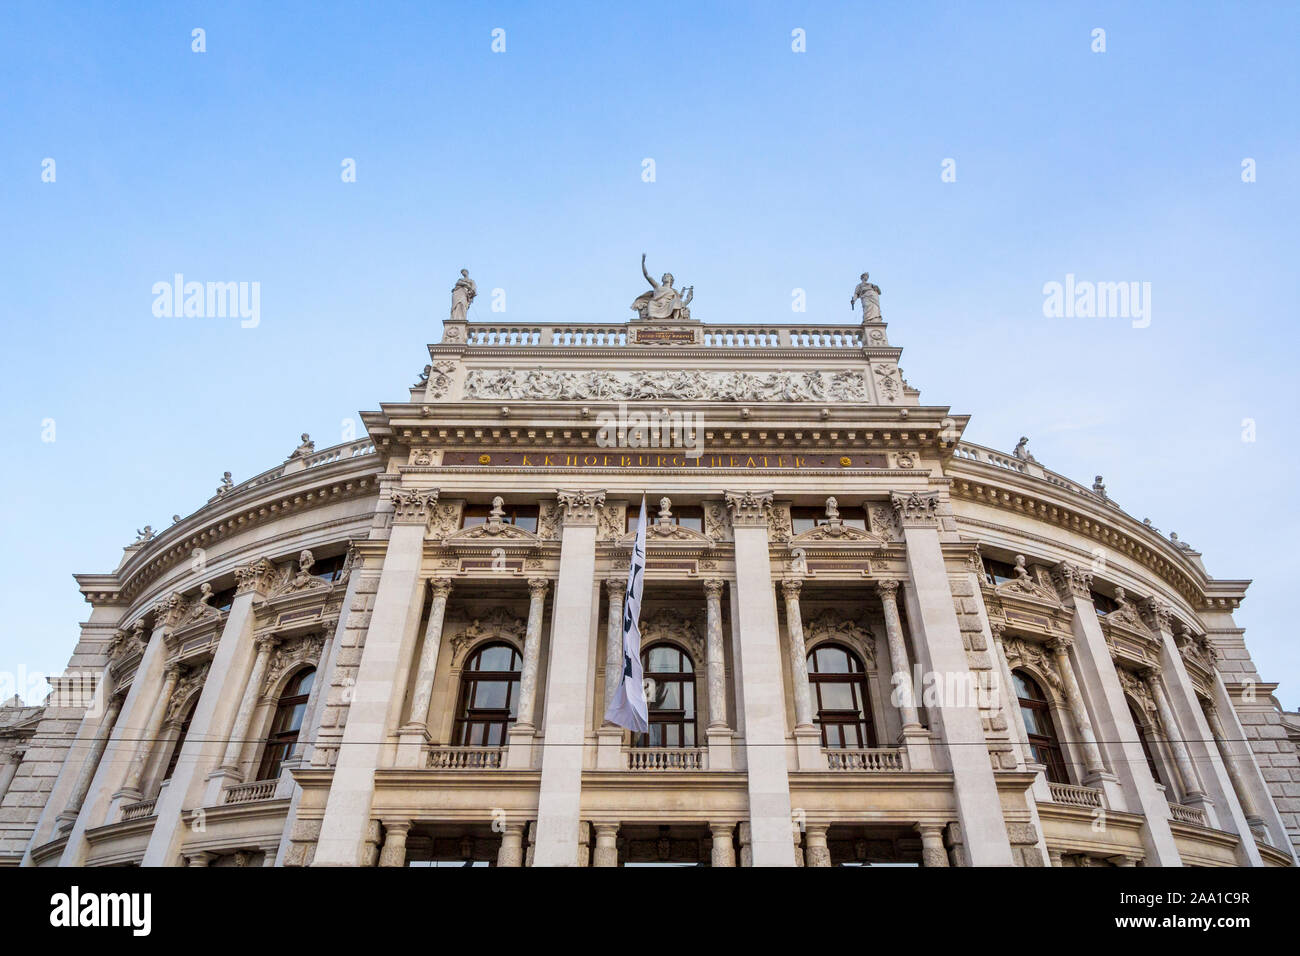 Hauptfassade des Burgtheater Theater in der Innenstadt von Wien, Österreich, mit seinen typischen barocken Austro hungarian Fassade. Es ist eines der wichtigsten Stockfoto